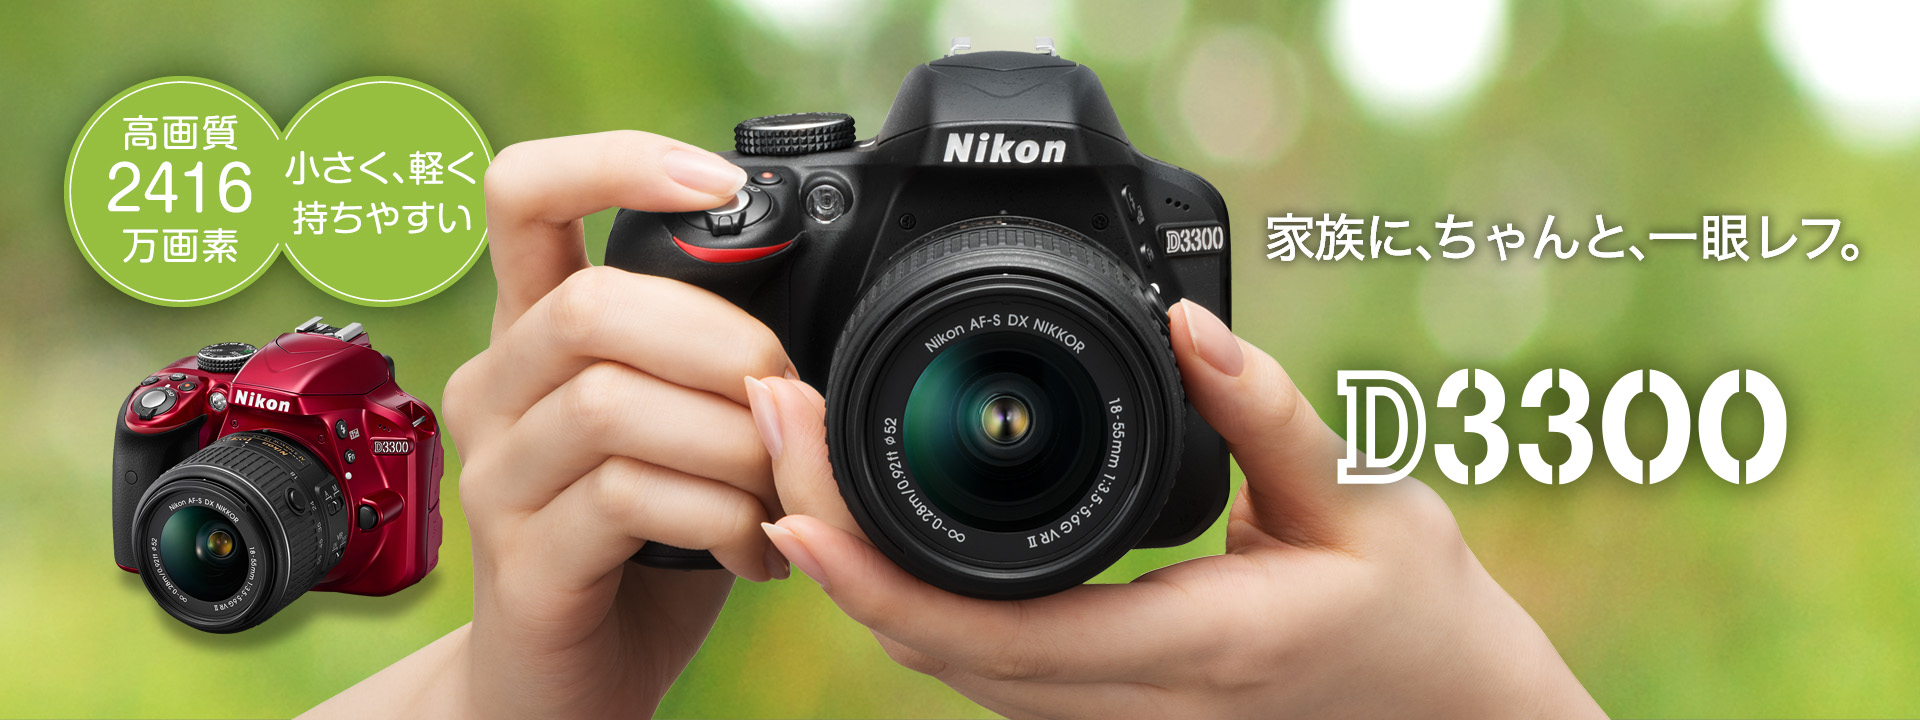 Nikon D3300（一眼レフカメラ）ご了承下さい